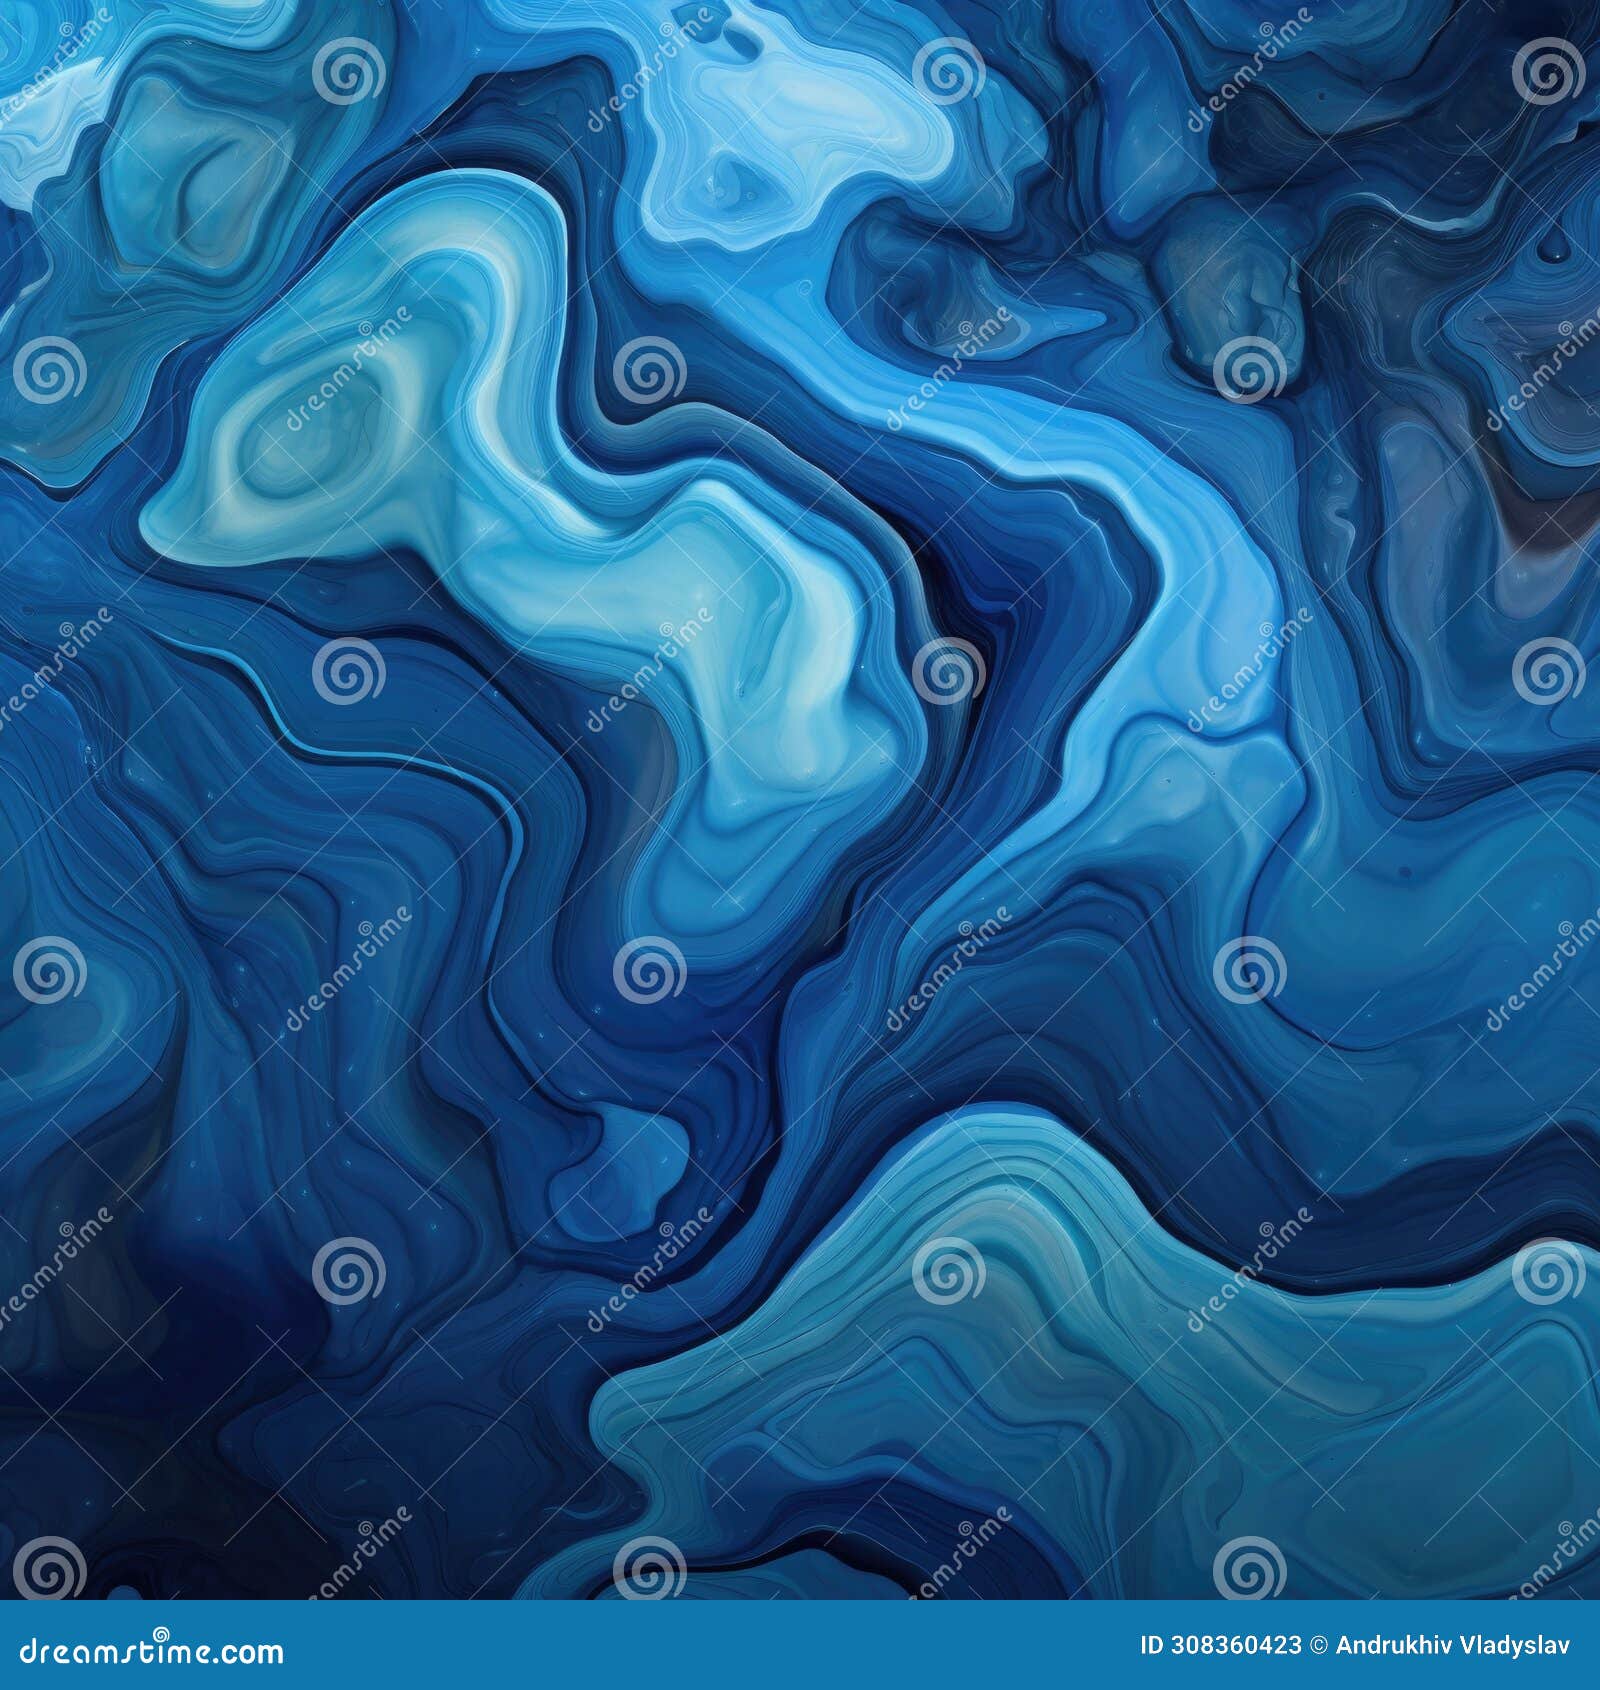 fondo abstracto con formas sinuosas y textura de piedra liquida de tonos azules